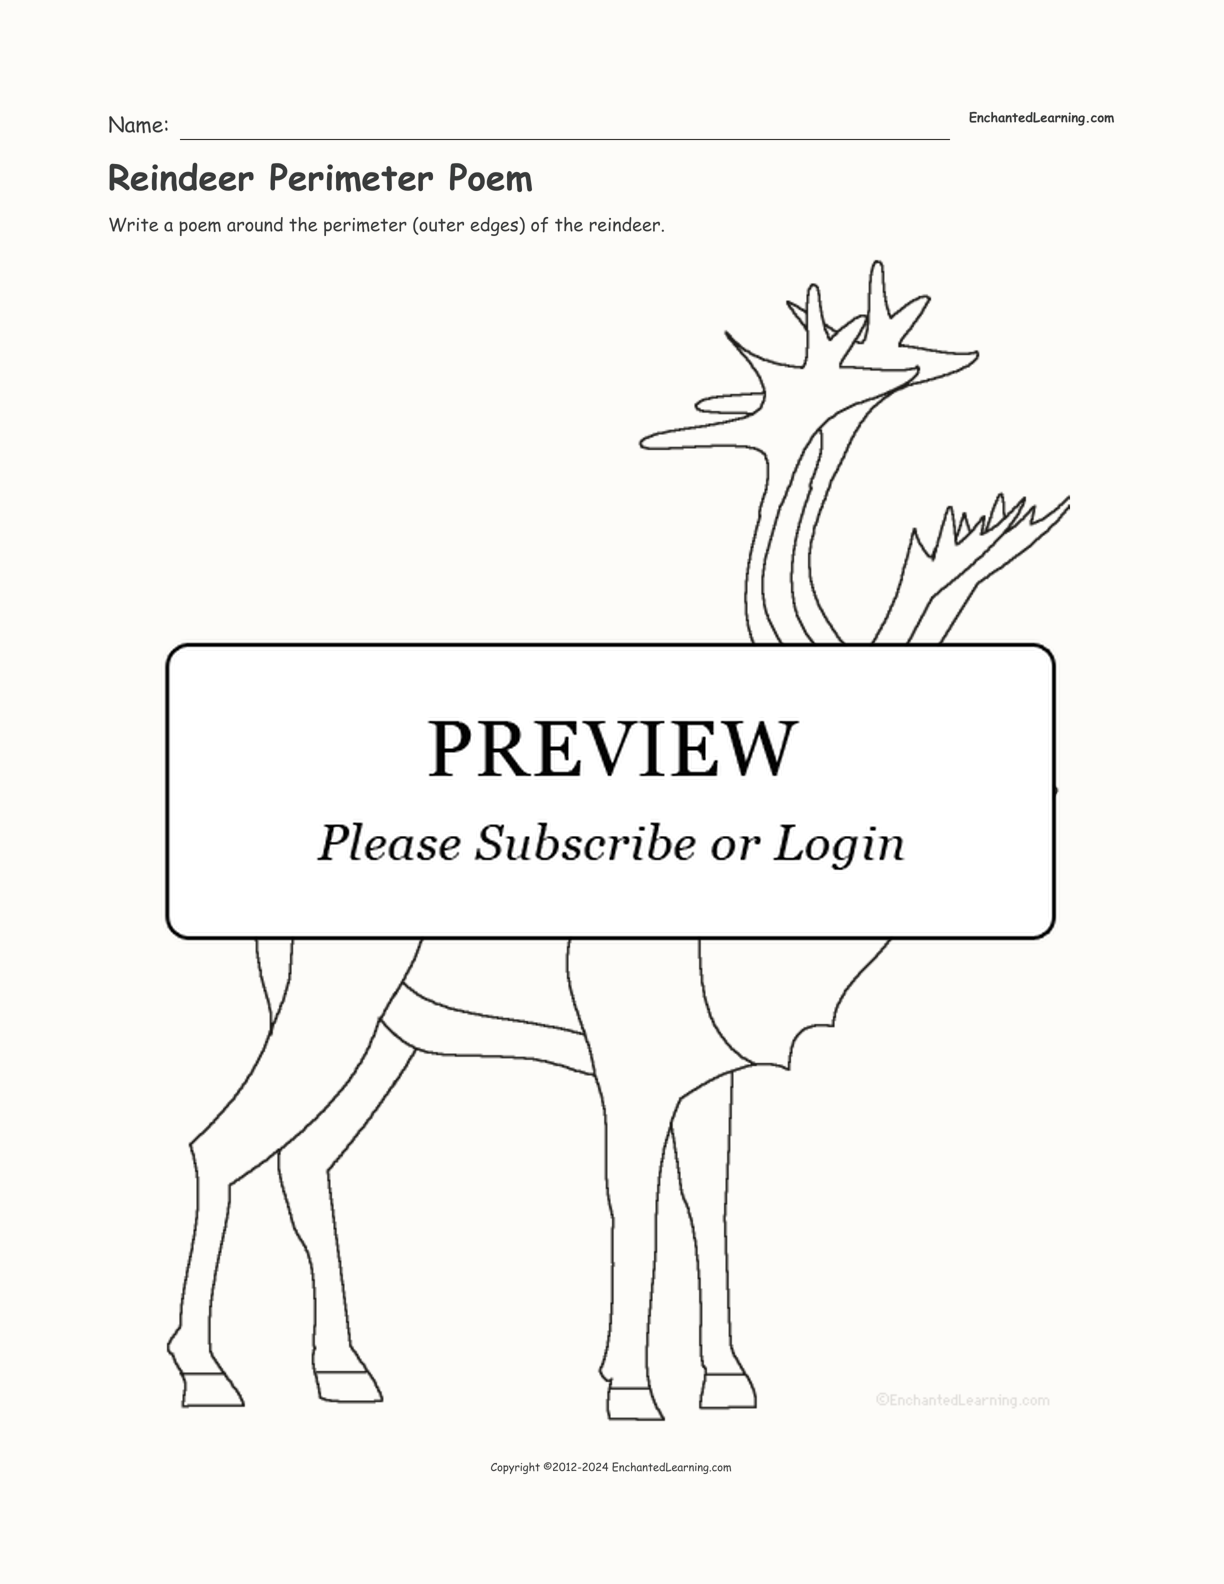 Reindeer Perimeter Poem interactive worksheet page 1